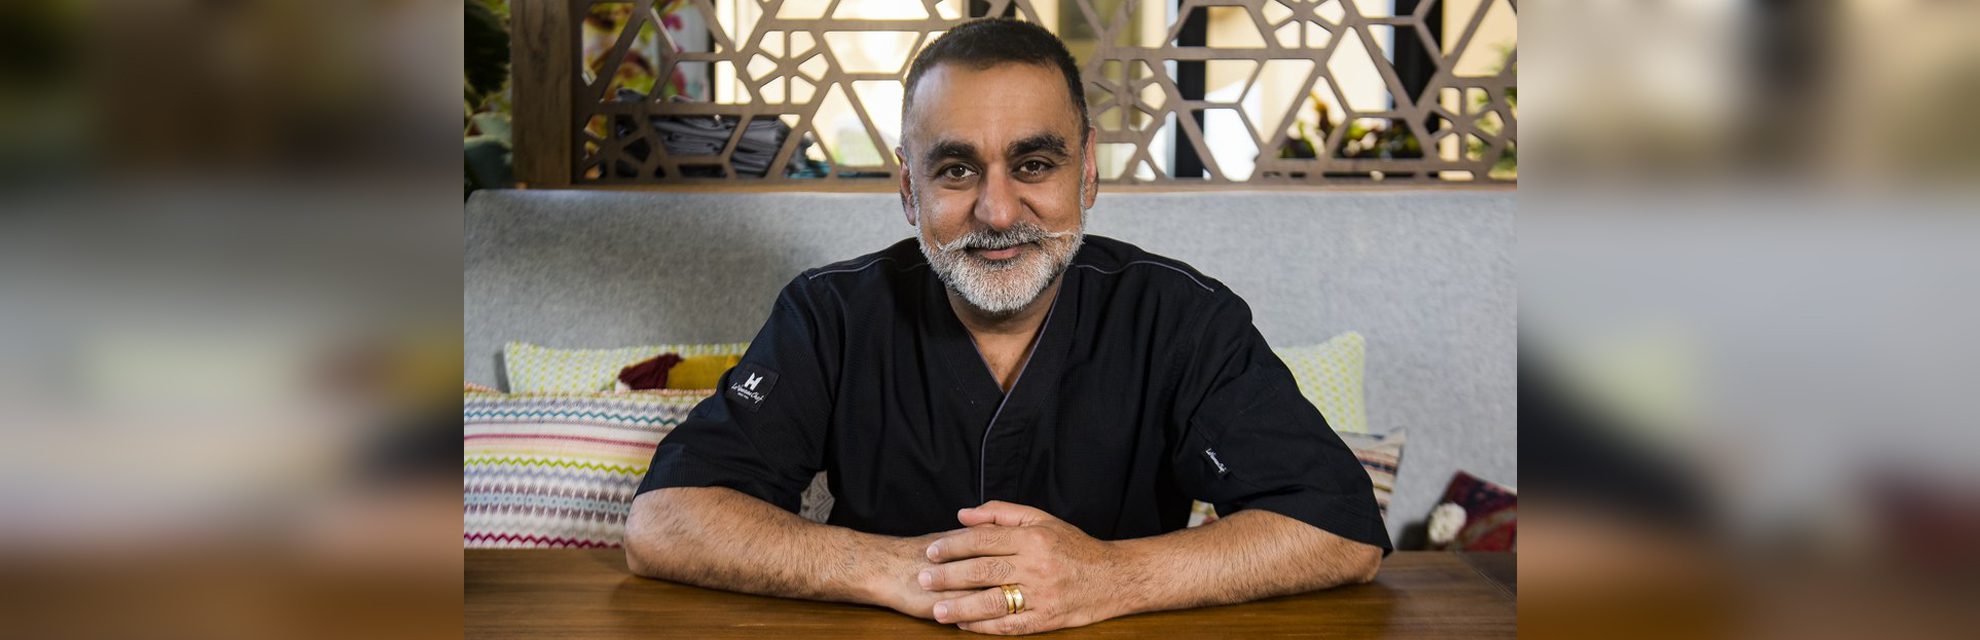 De star culinaire à activiste social : le chef étoilé Vineet Bhatia revêt de nombreuses casquettes